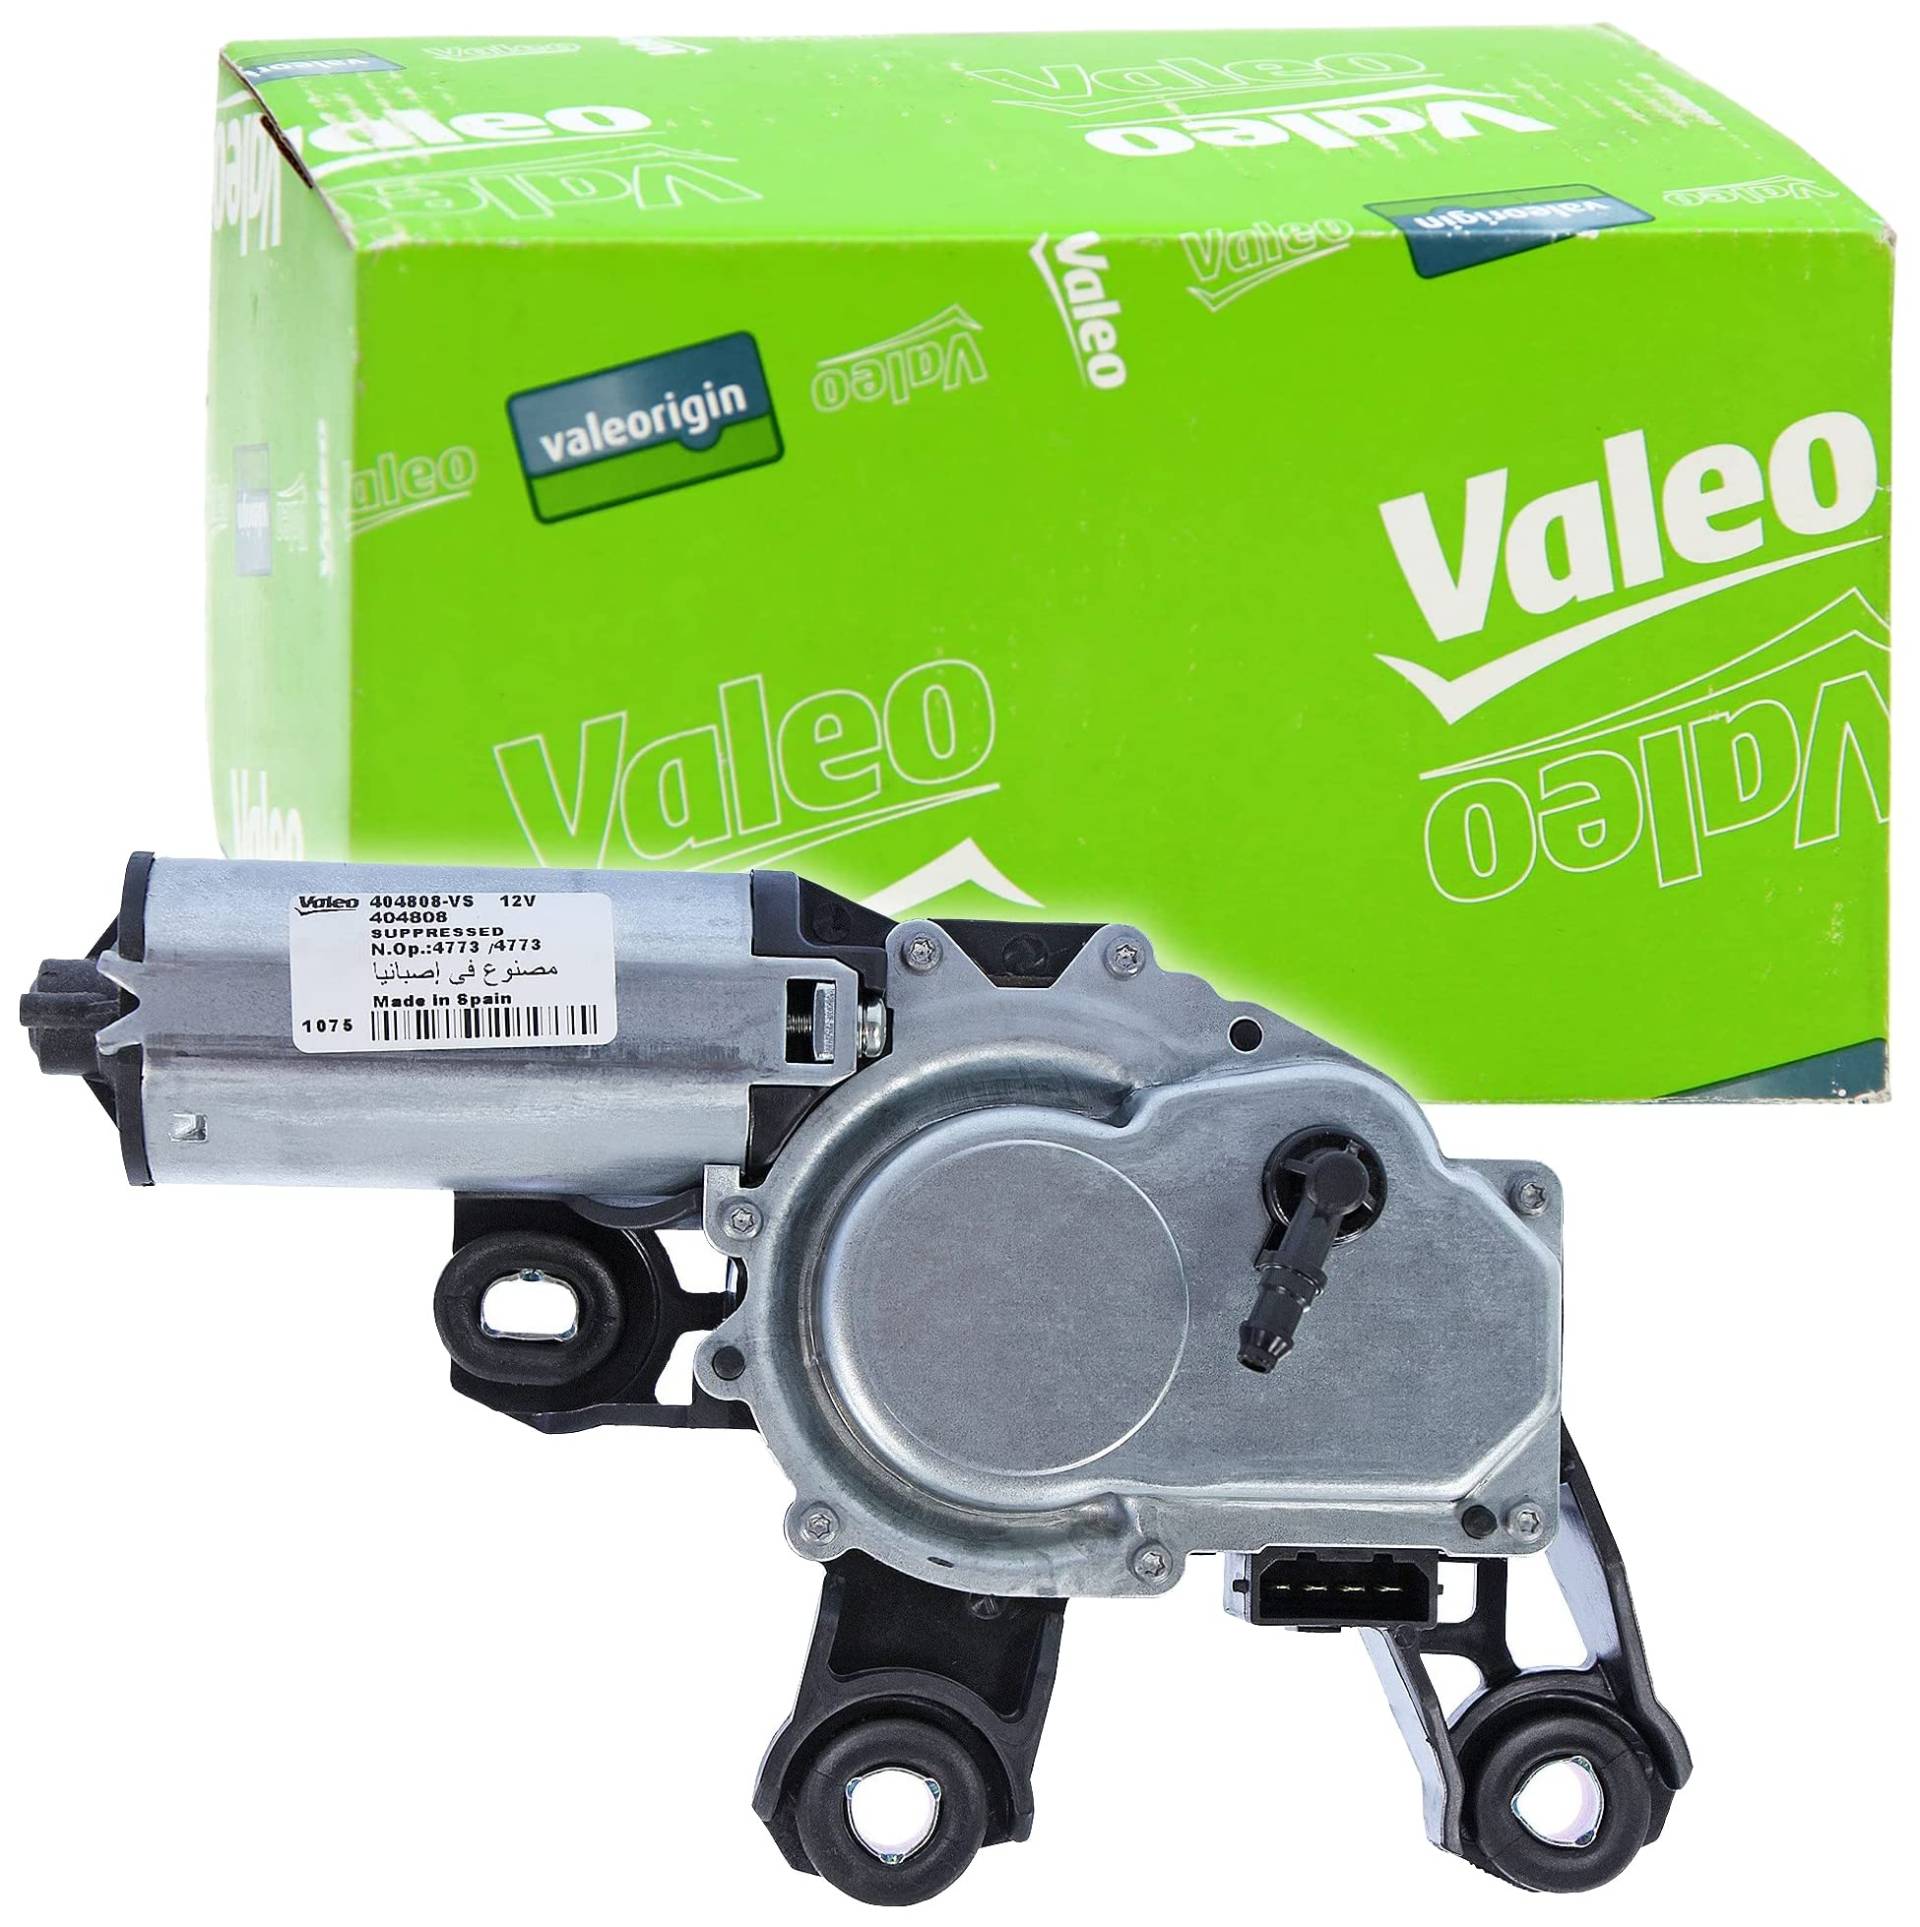 VALEO - Heckwischermotor - 404808 - MULT4AN V, TRANSPORTER V von Valeo